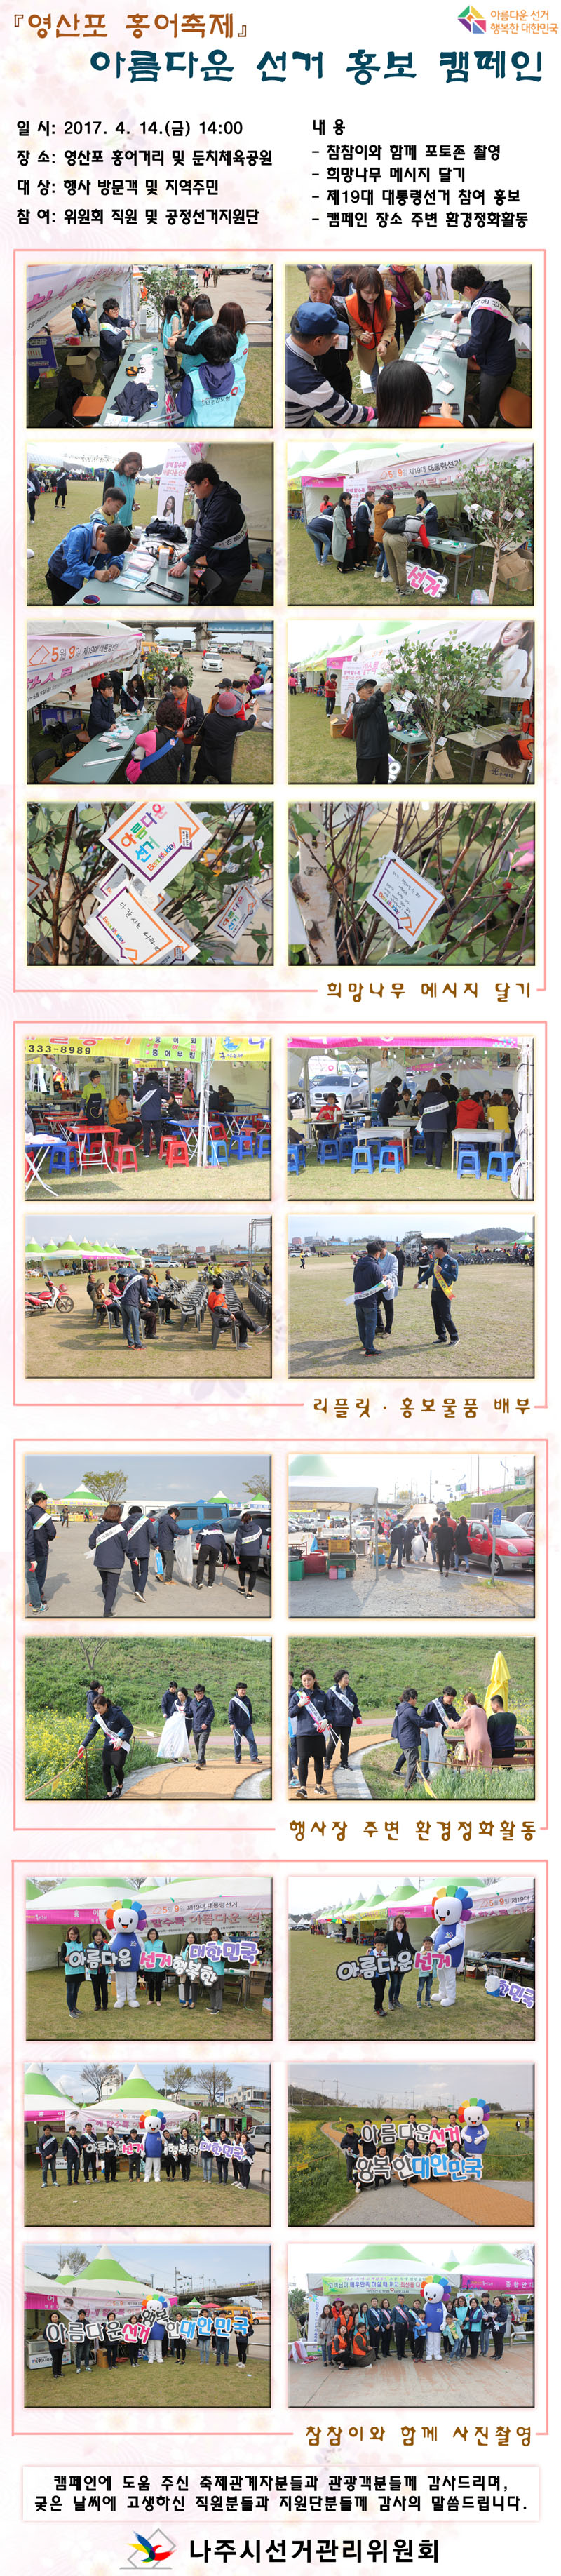 영산포 홍어축제 관련 사진